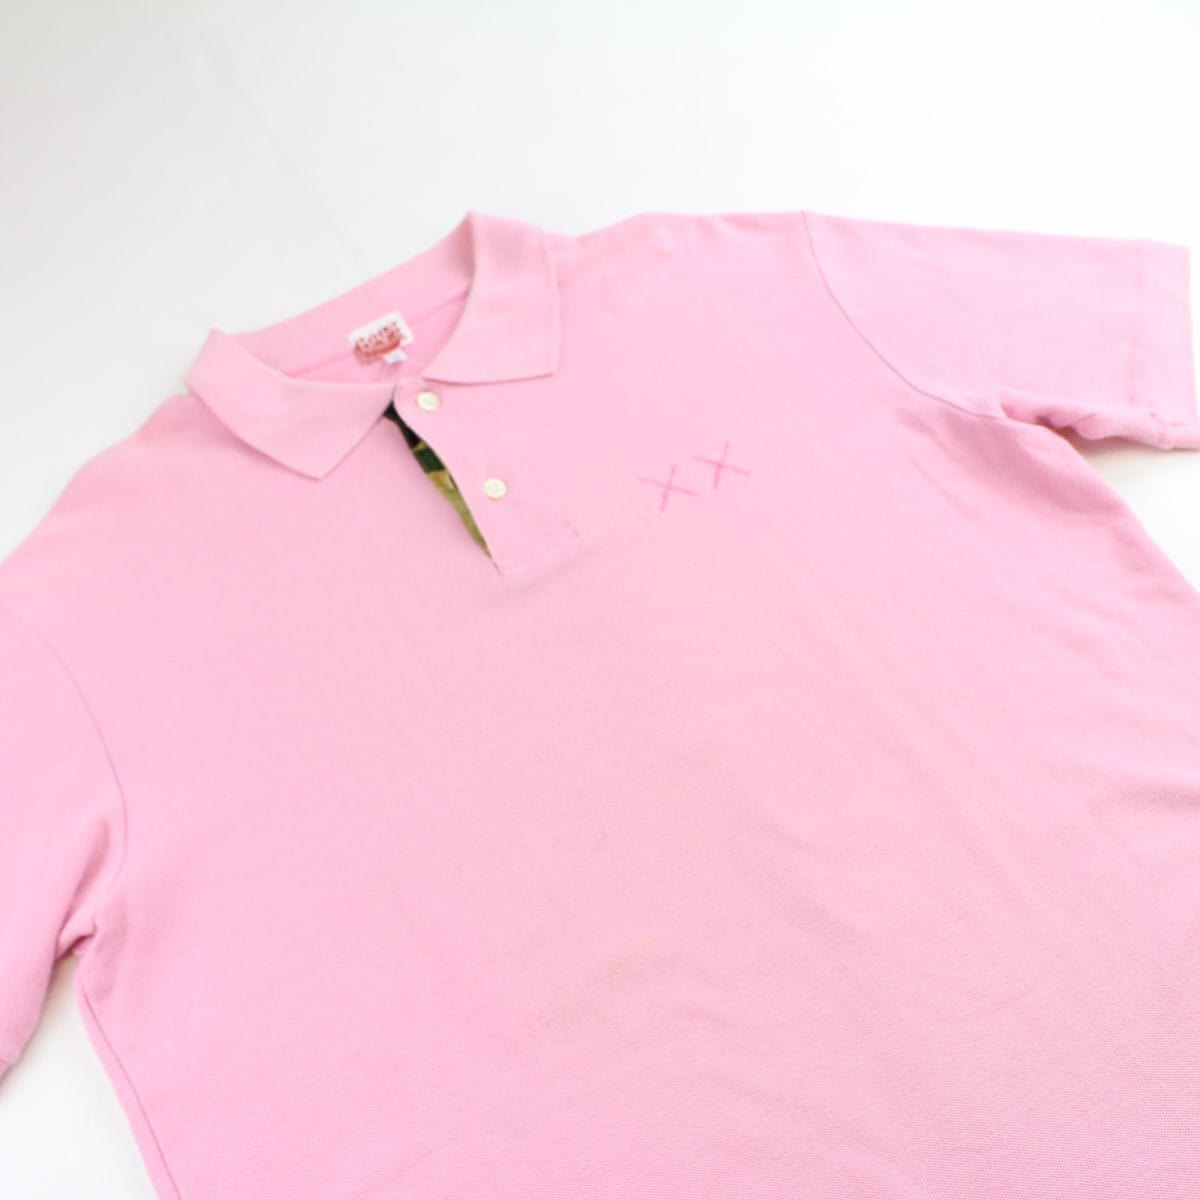 Bape x Kaws Polo Shirt Pink - SARUUK